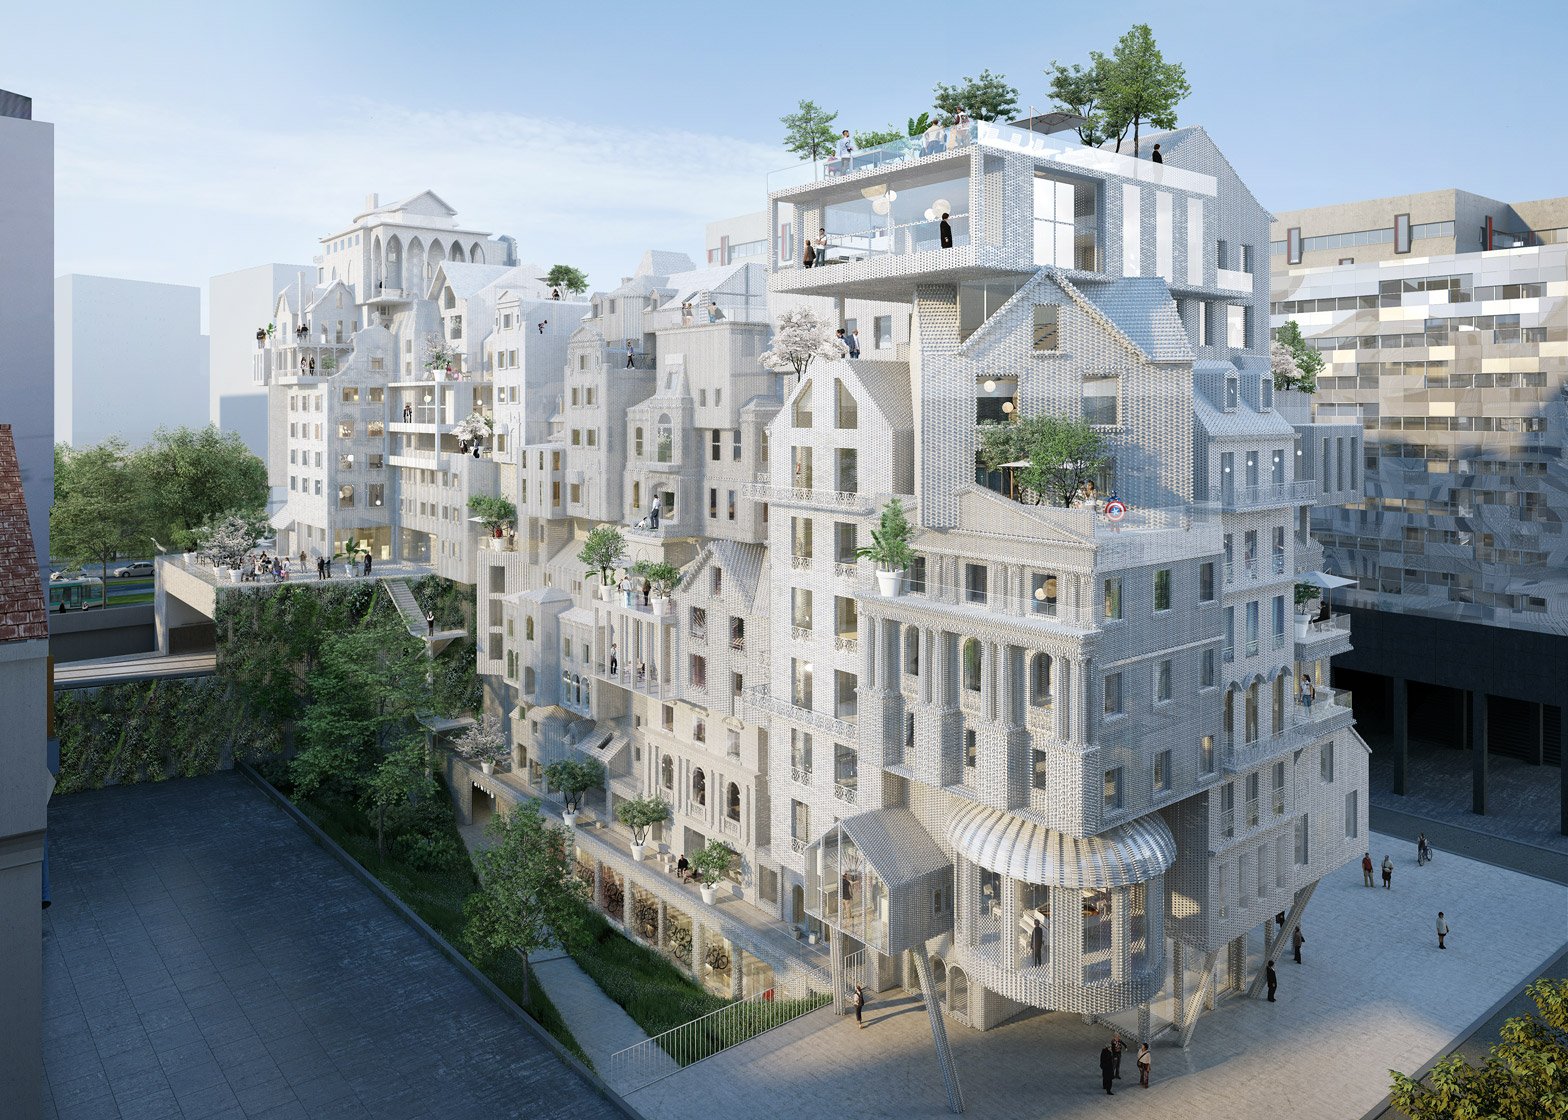 Immeuble Village by Périphériques in Paris, France